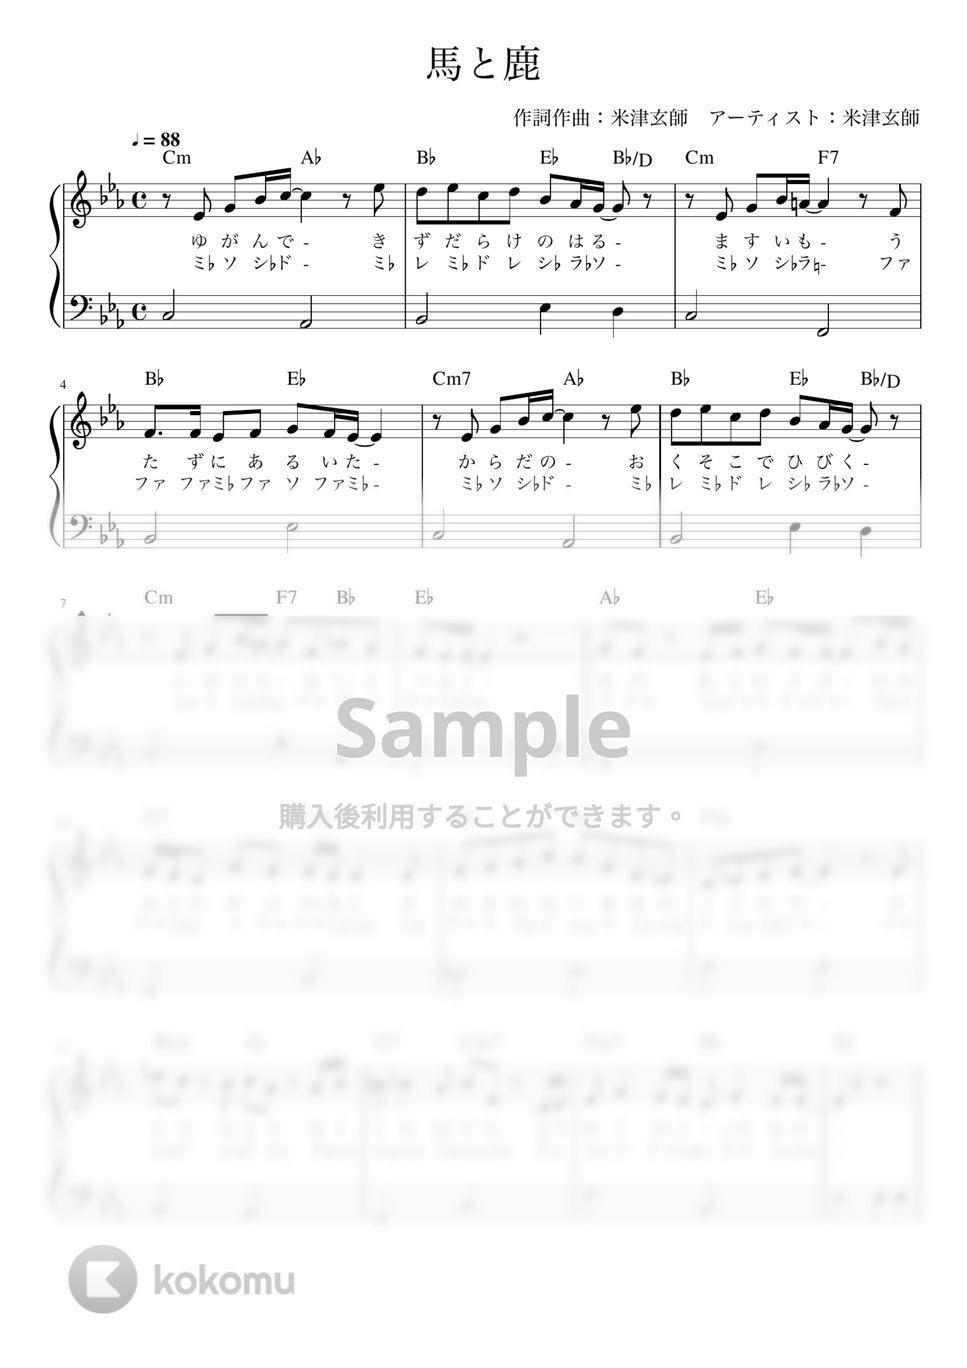 米津玄師 - 馬と鹿 (ピアノ かんたん 歌詞付き ドレミ付き 初心者) by piano.tokyo